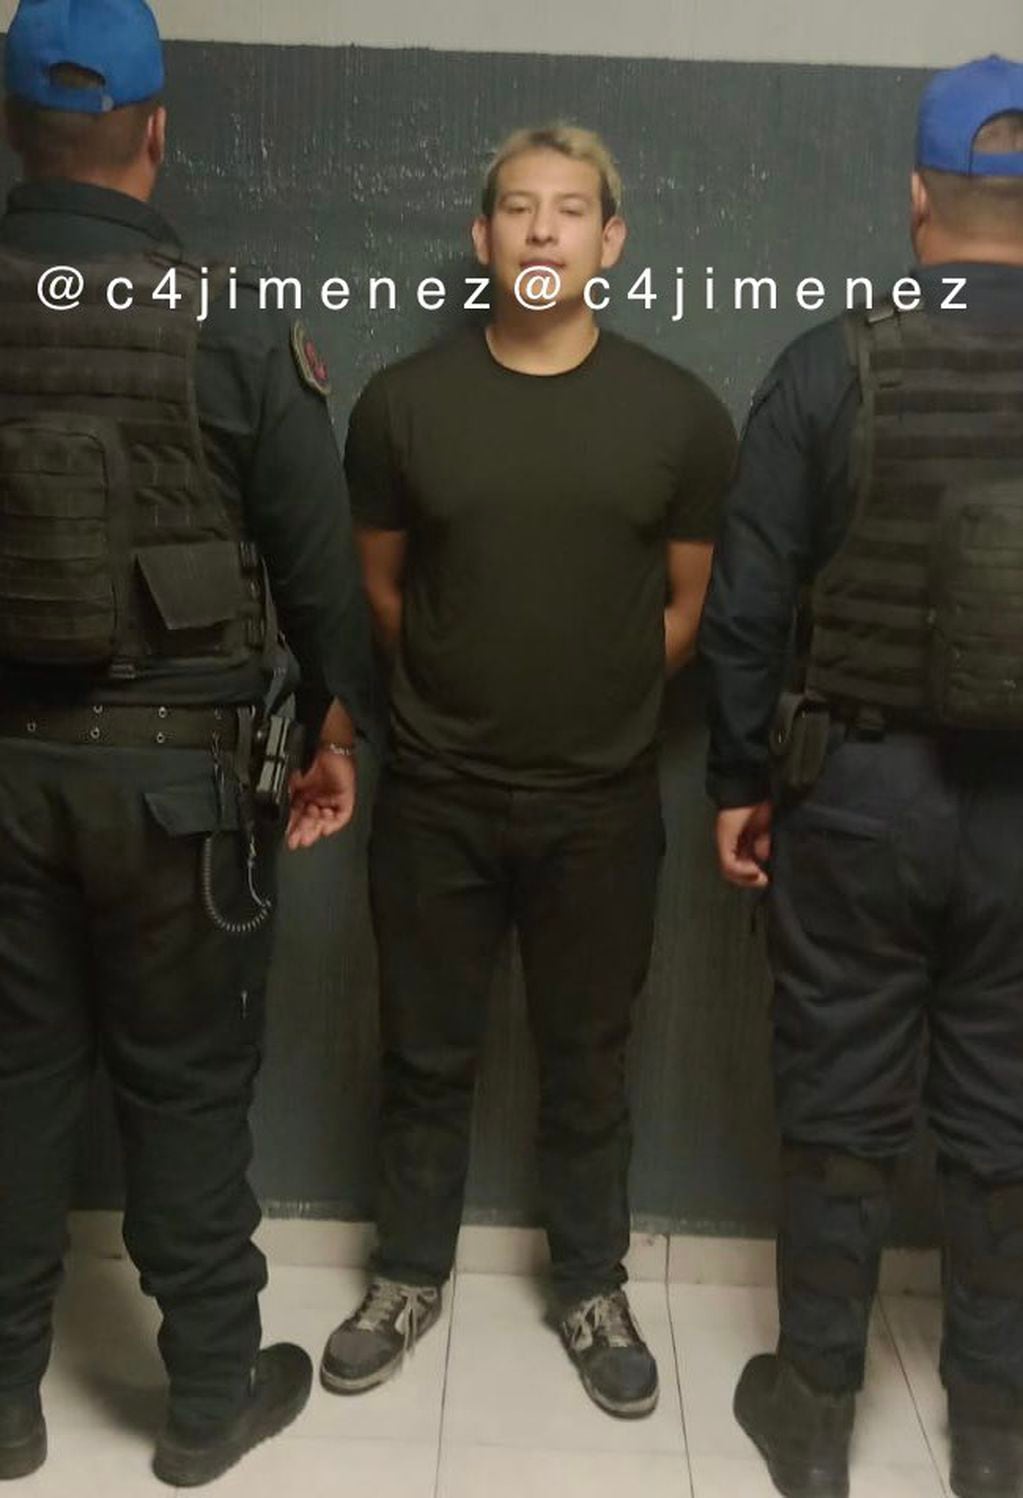 Abraham Precilla Baga, de 24 años, fue detenido tras golpear a varias mujeres en el 8M en México. Foto: X / @c4jimenez